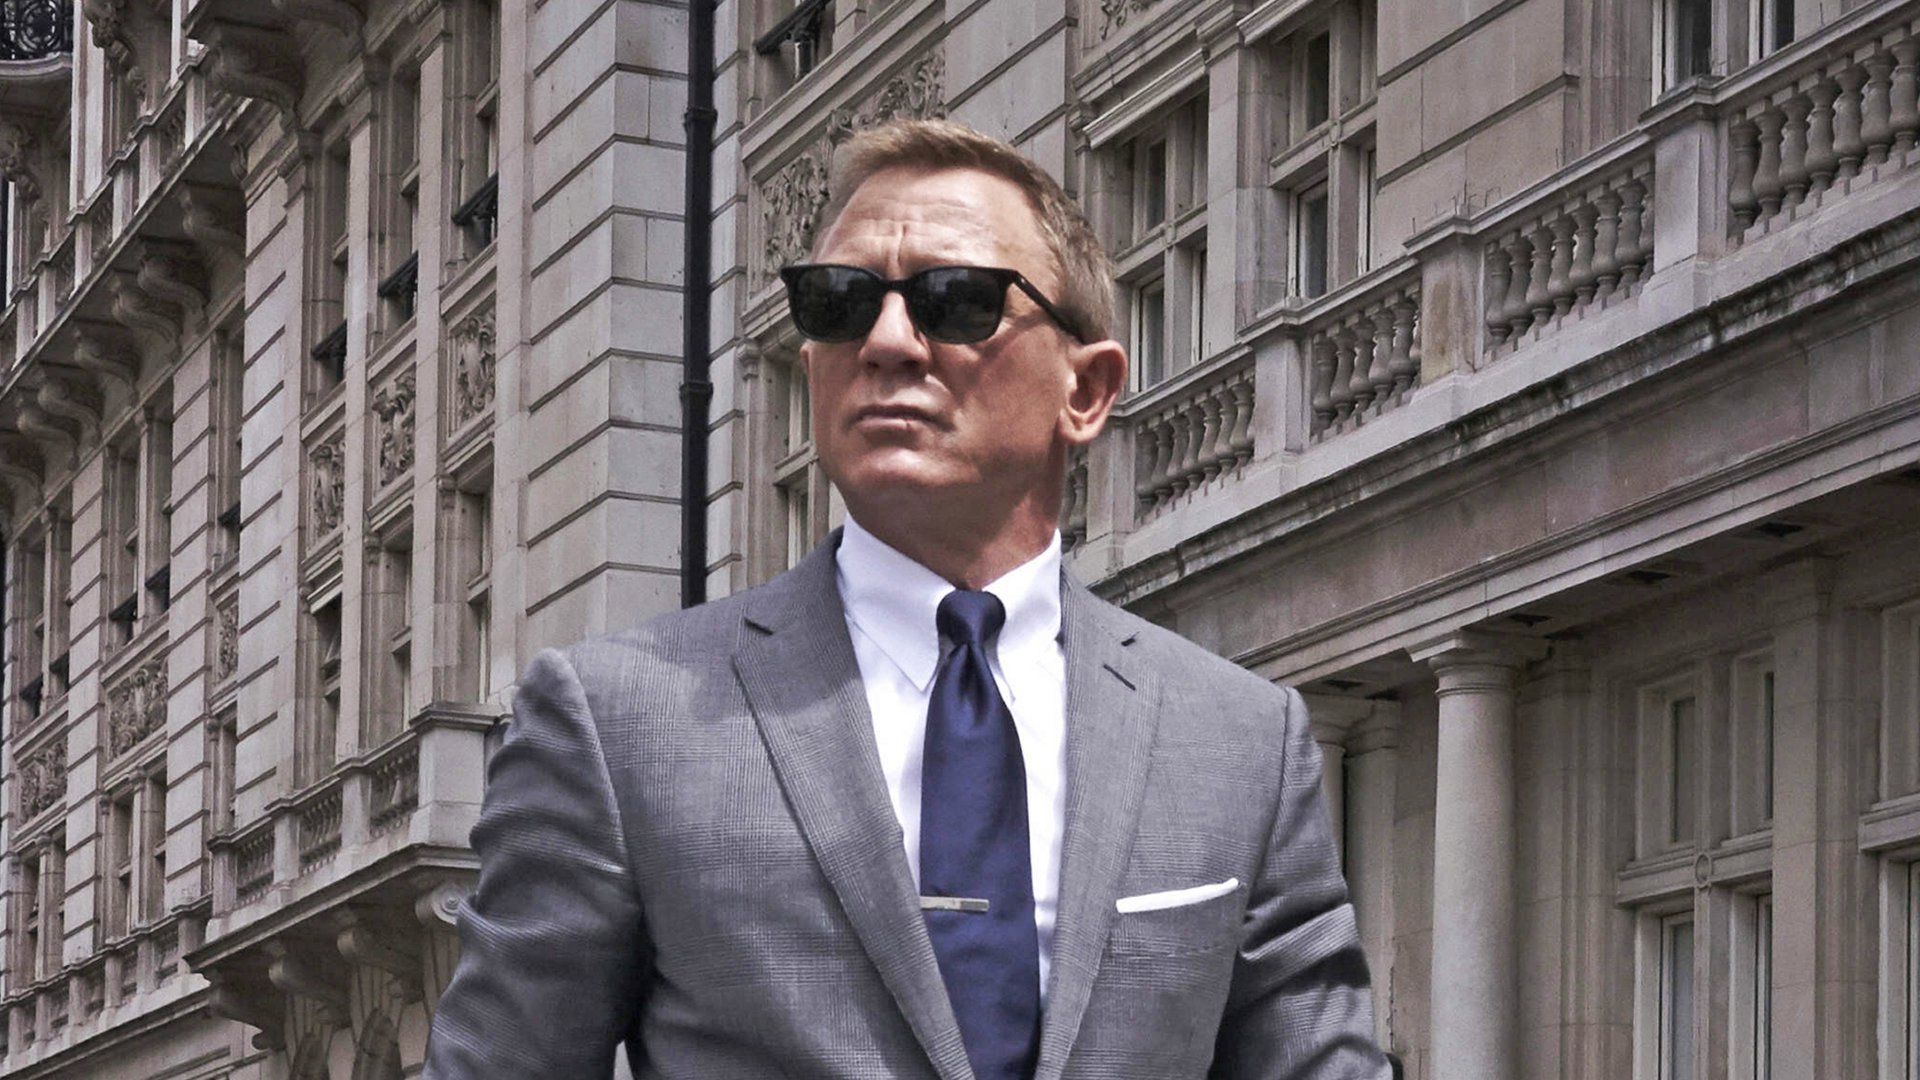 #Wahl des neuen James Bond: Dieser Netflix-Star hat wohl ziemlich gute Chancen